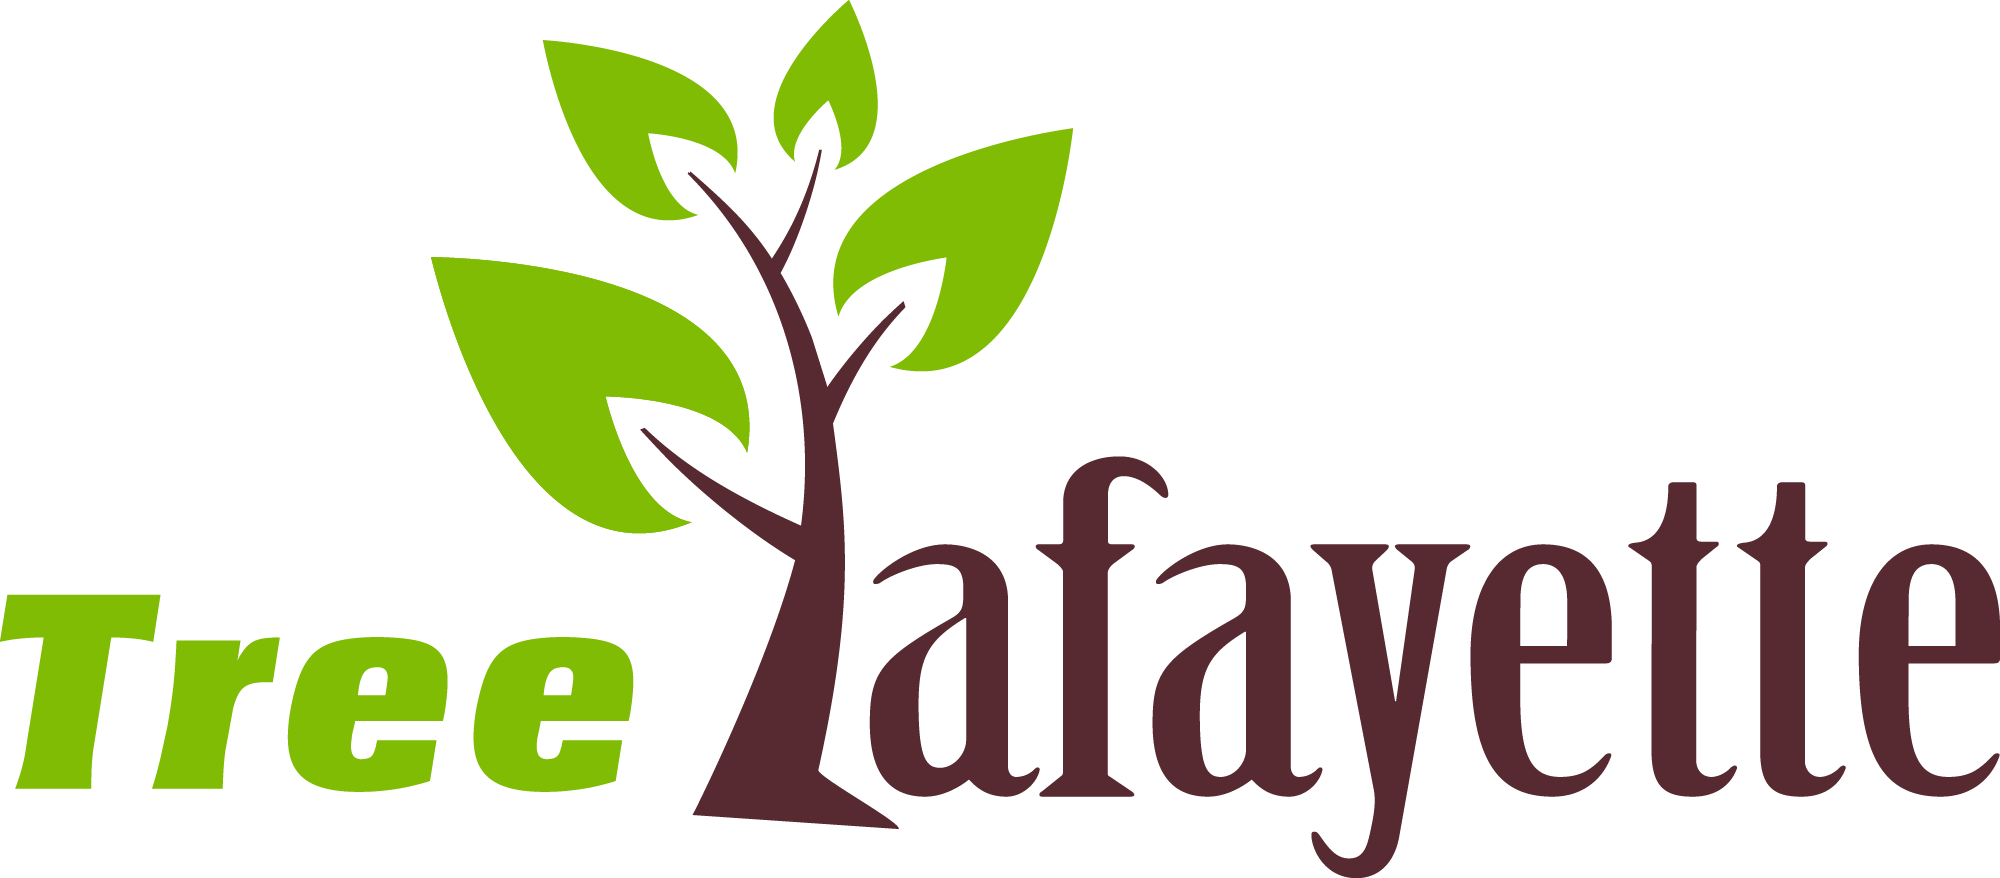 Tree Lafayette Logo